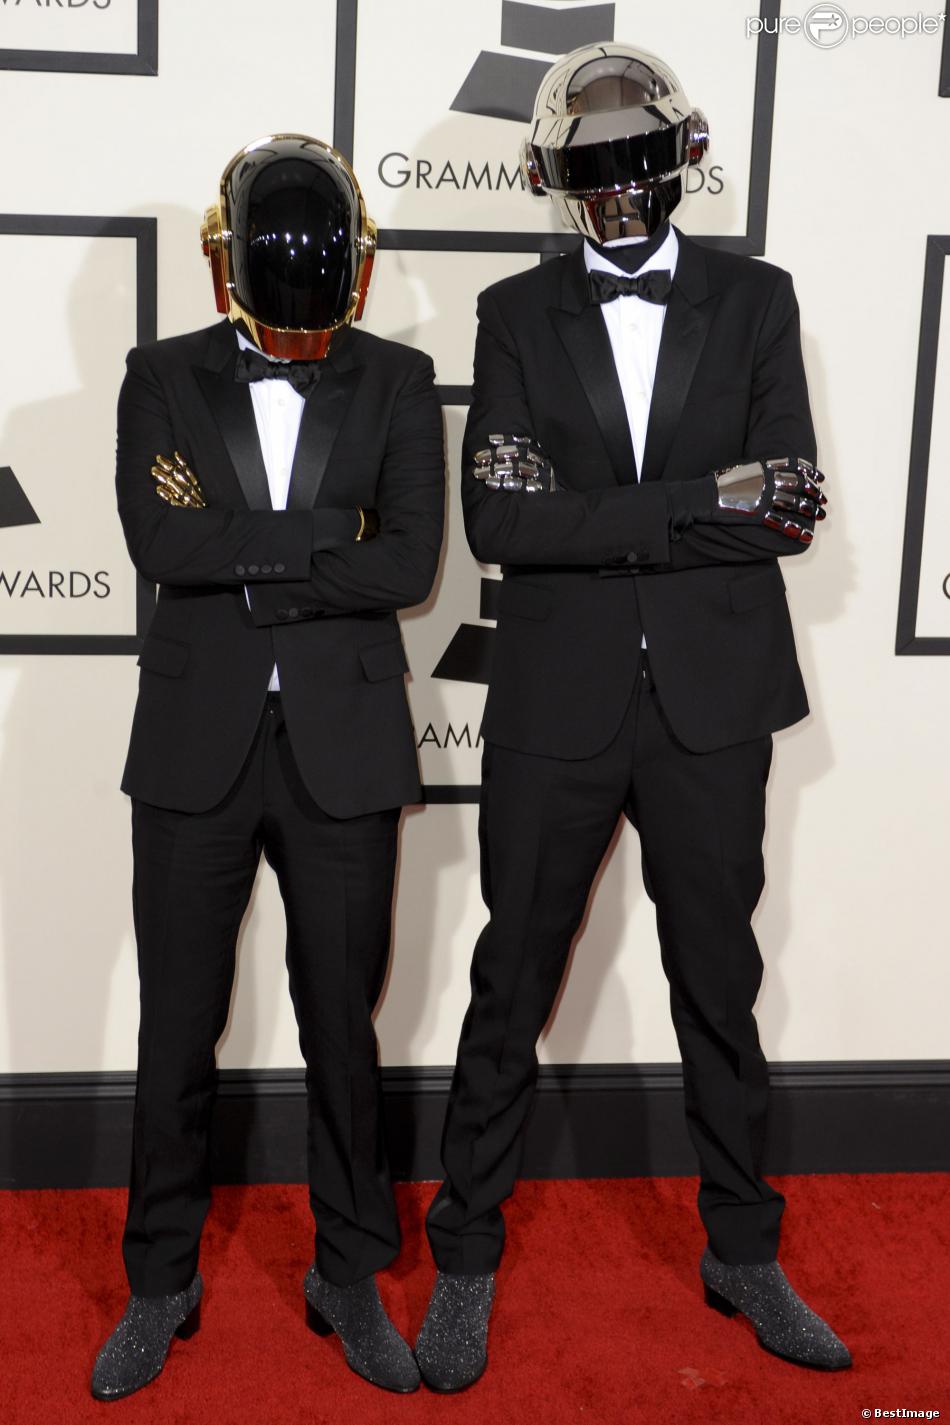 Les Daft Punk, robots ultrastylés en smokings et chaussures Saint Laurent lors des 56e Grammy Awards au Staples Center. Los Angeles, le 26 janvier 2014.